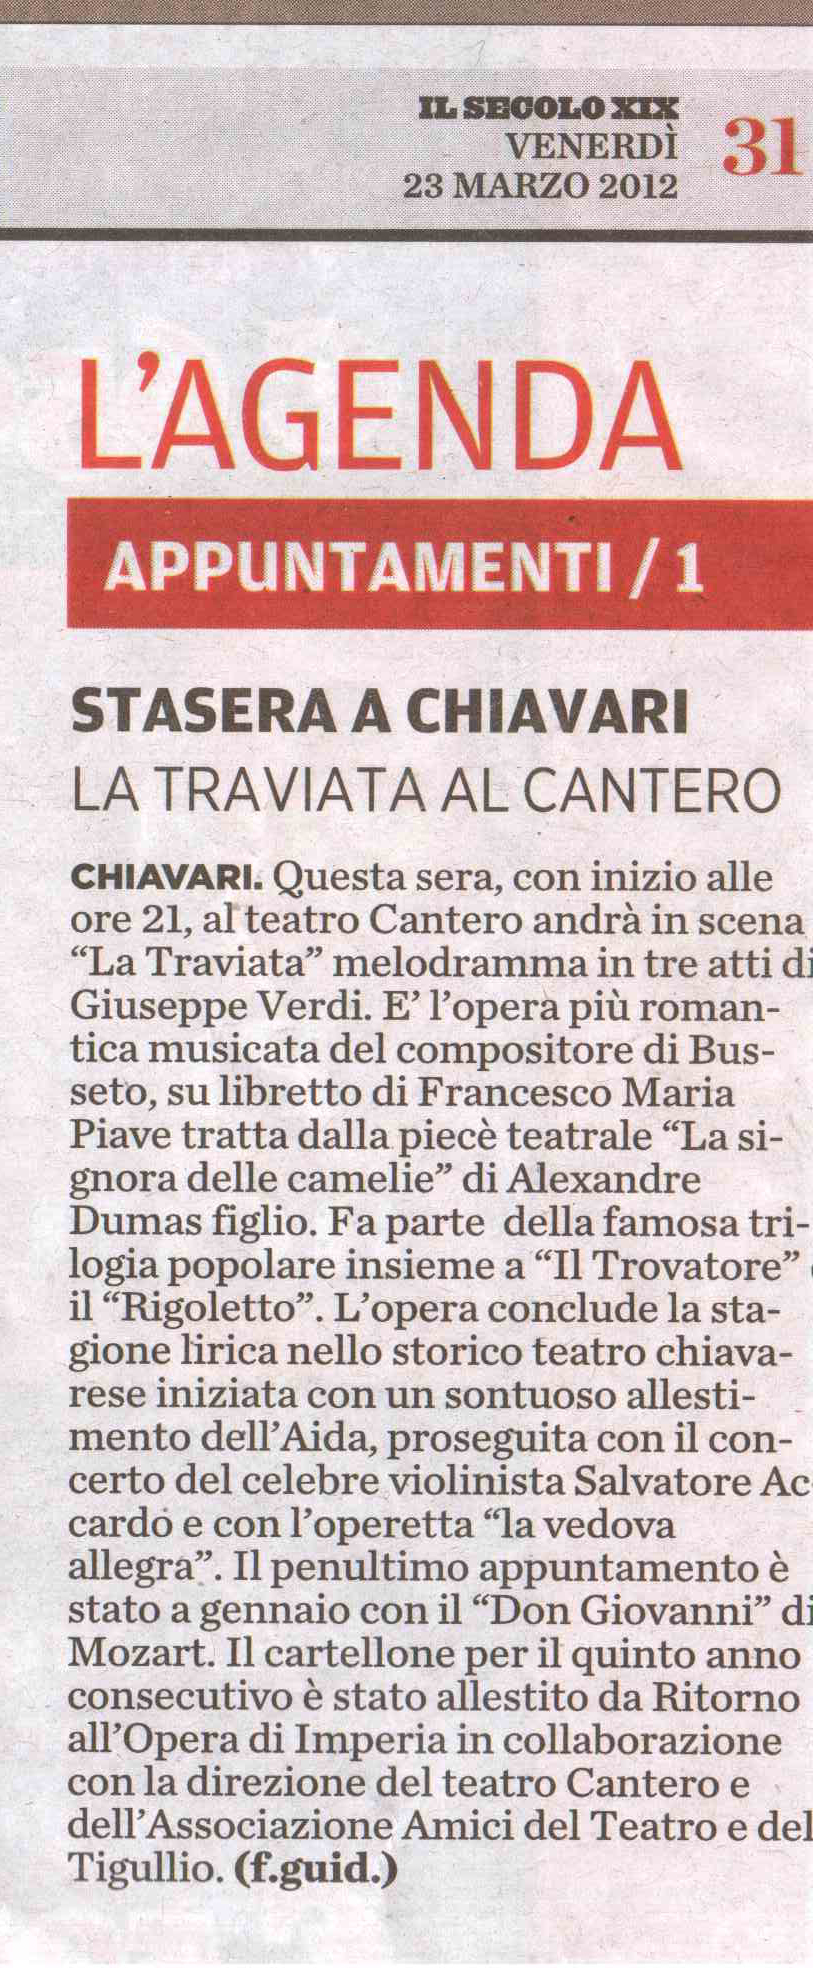 23.03.2012 – IL SECOLO XIX – La Traviata